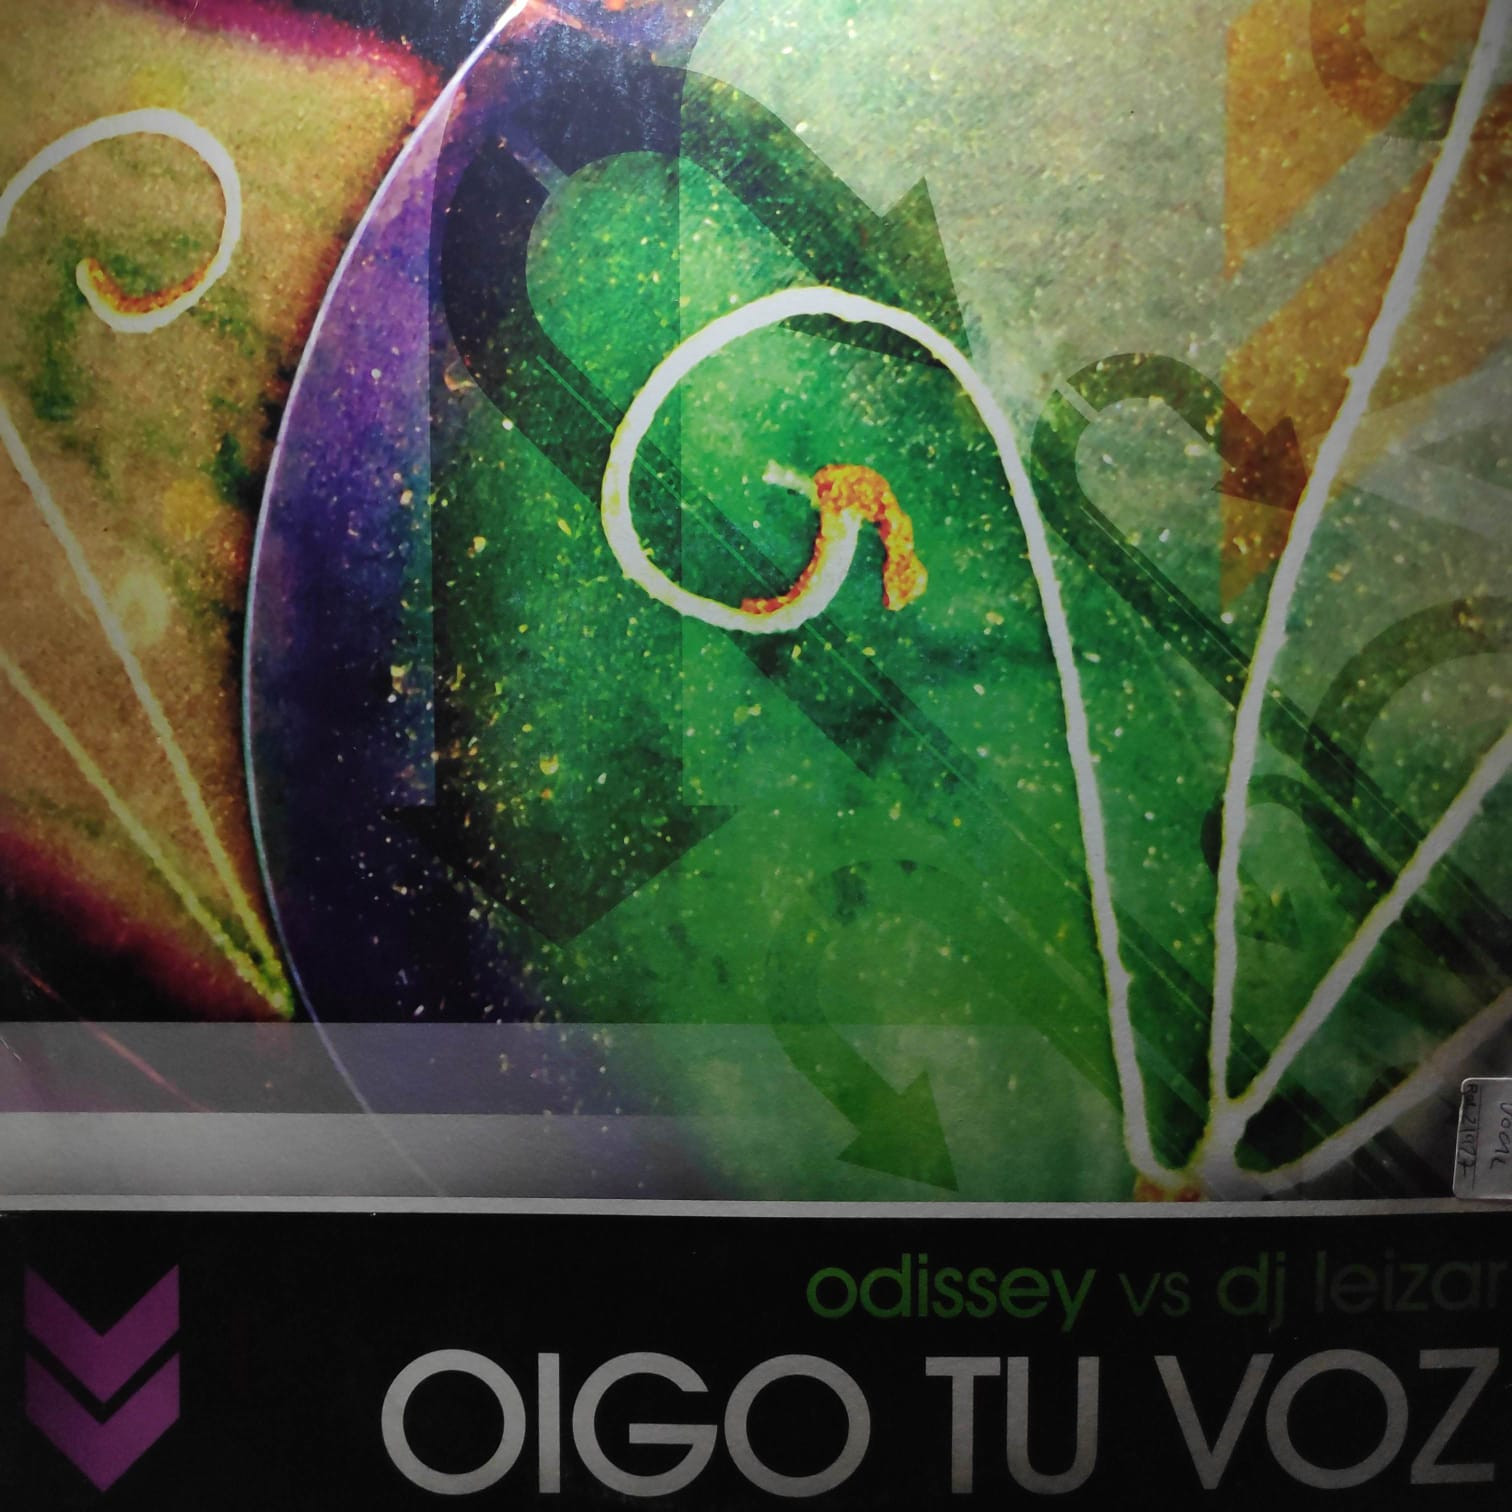 (28609) Odissey vs DJ Leizar ‎– Oigo Tu Voz (VG+/GENERIC)